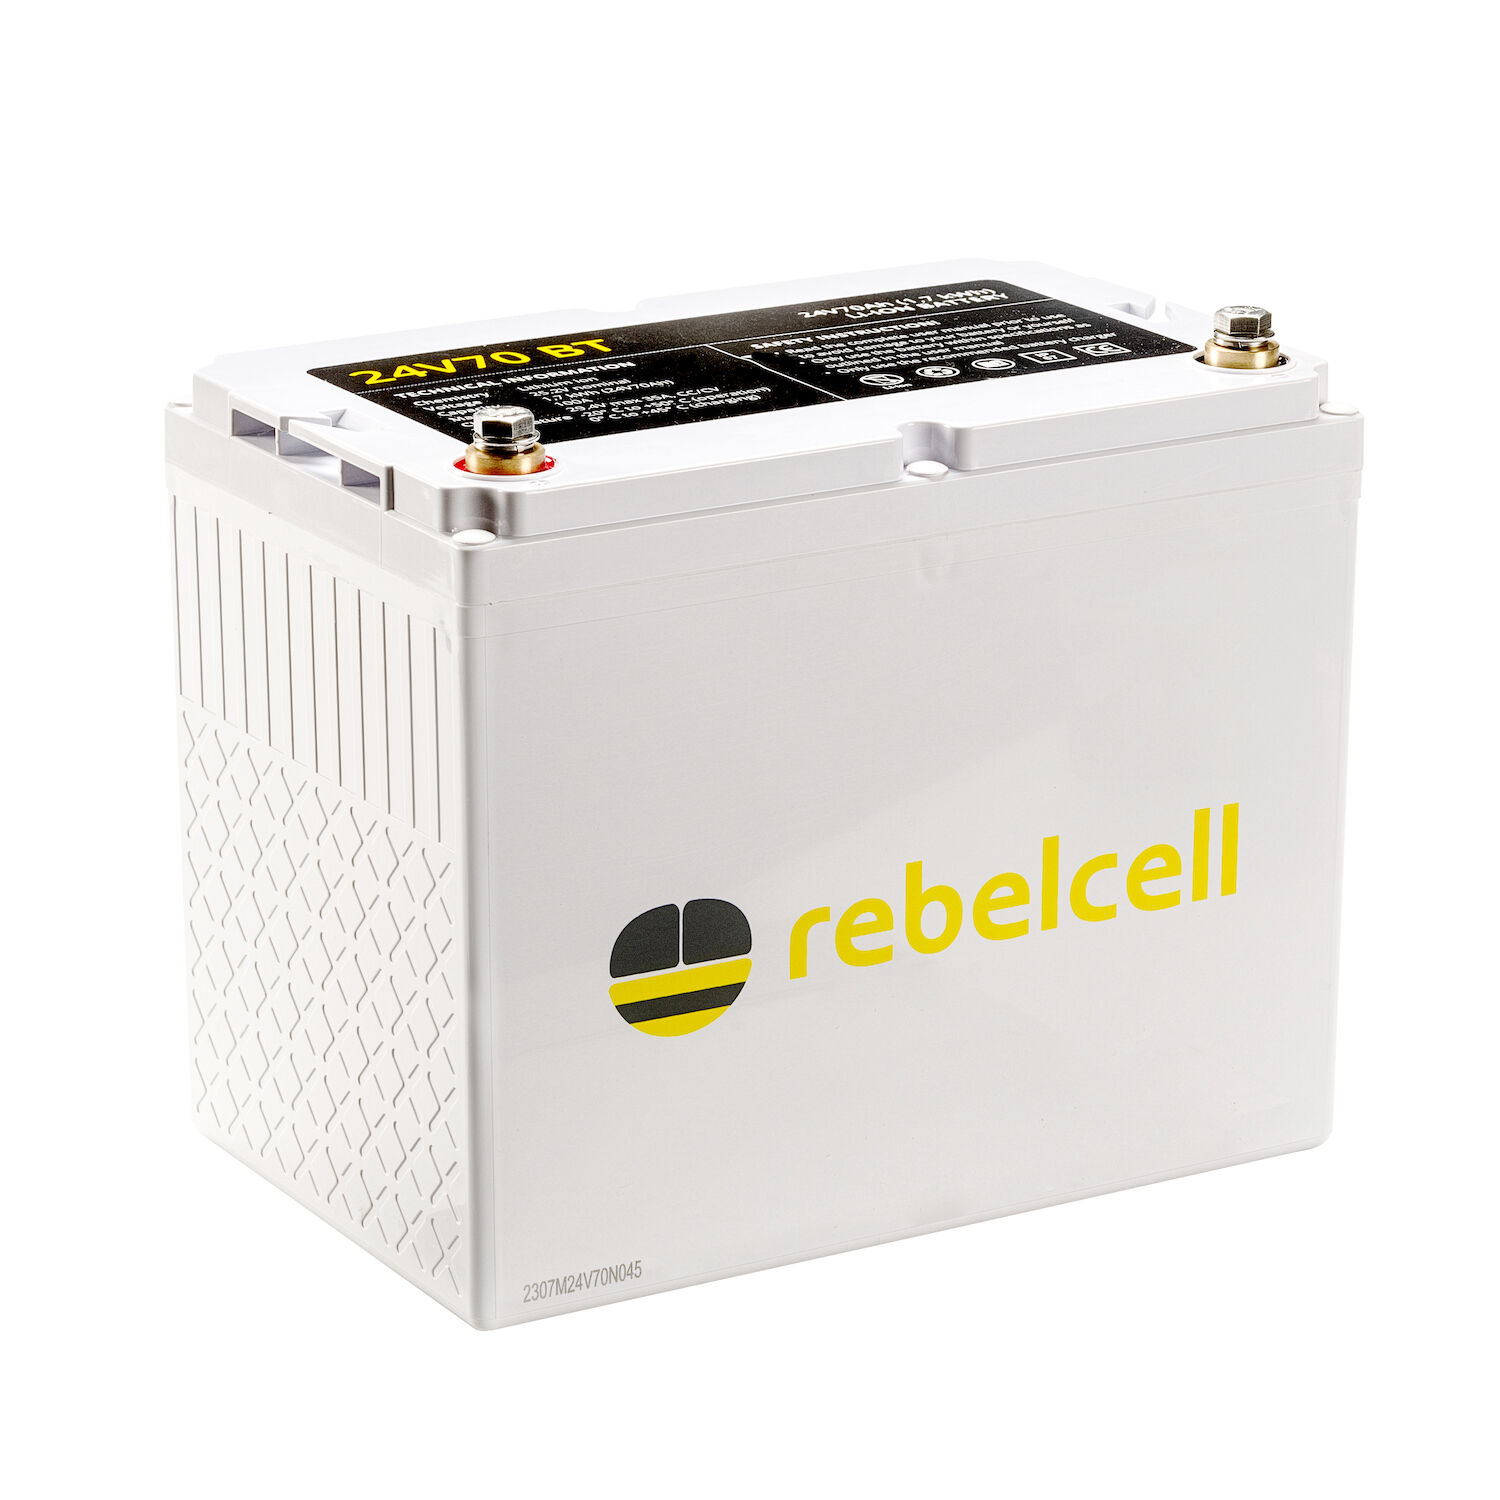 RebelCell 24V70 BT Lithium Batterie (24V 70Ah) 1,70kWh